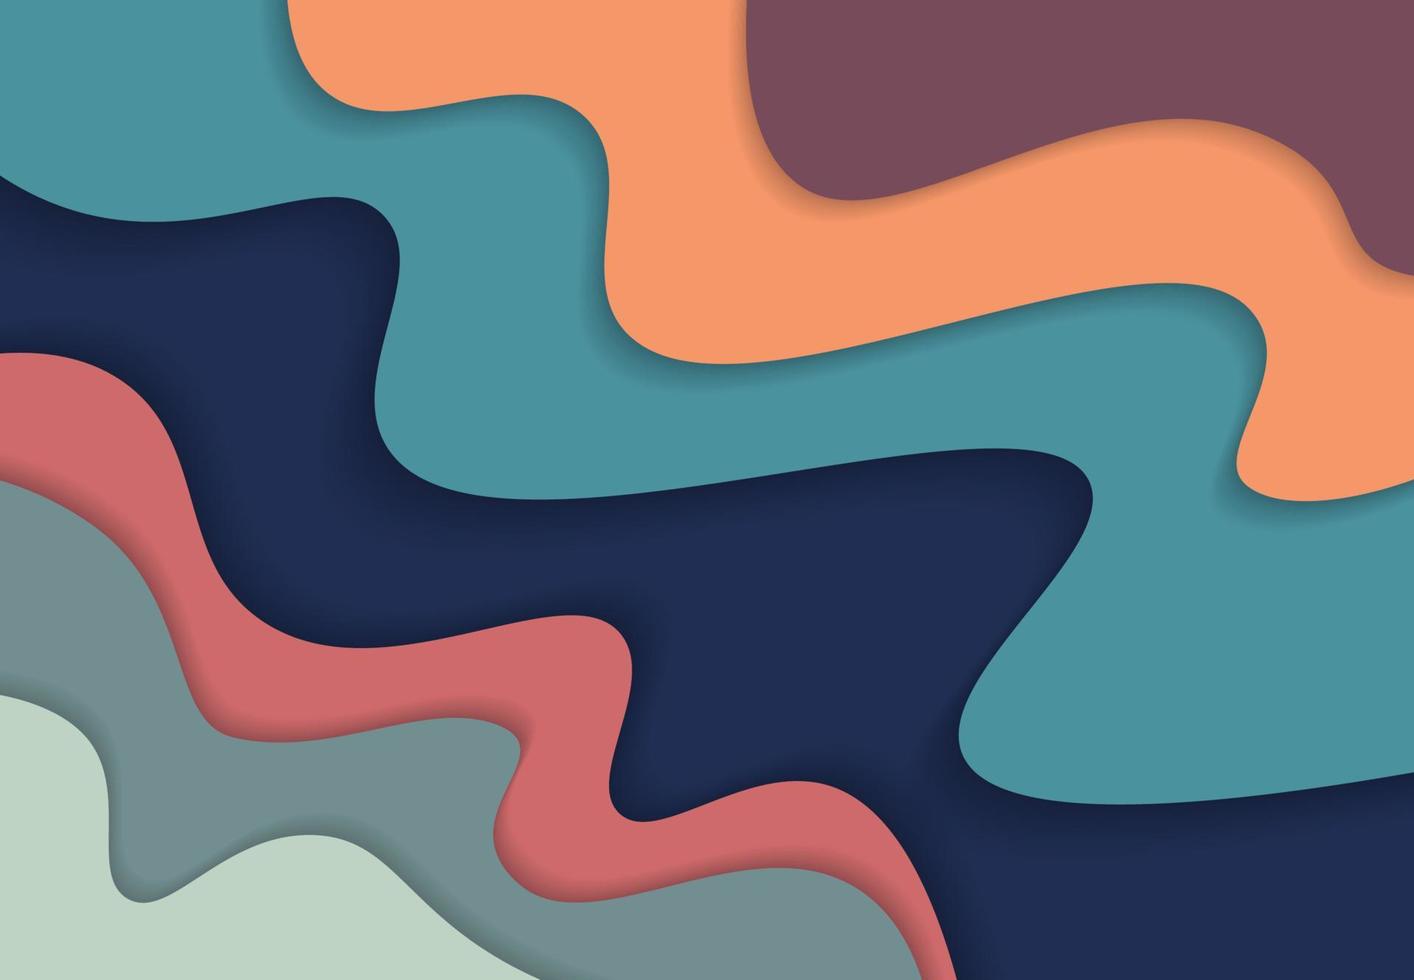 abstracte kleurrijke vrije stijl vorm patroon artwork ontwerp achtergrond. illustratie vector eps10